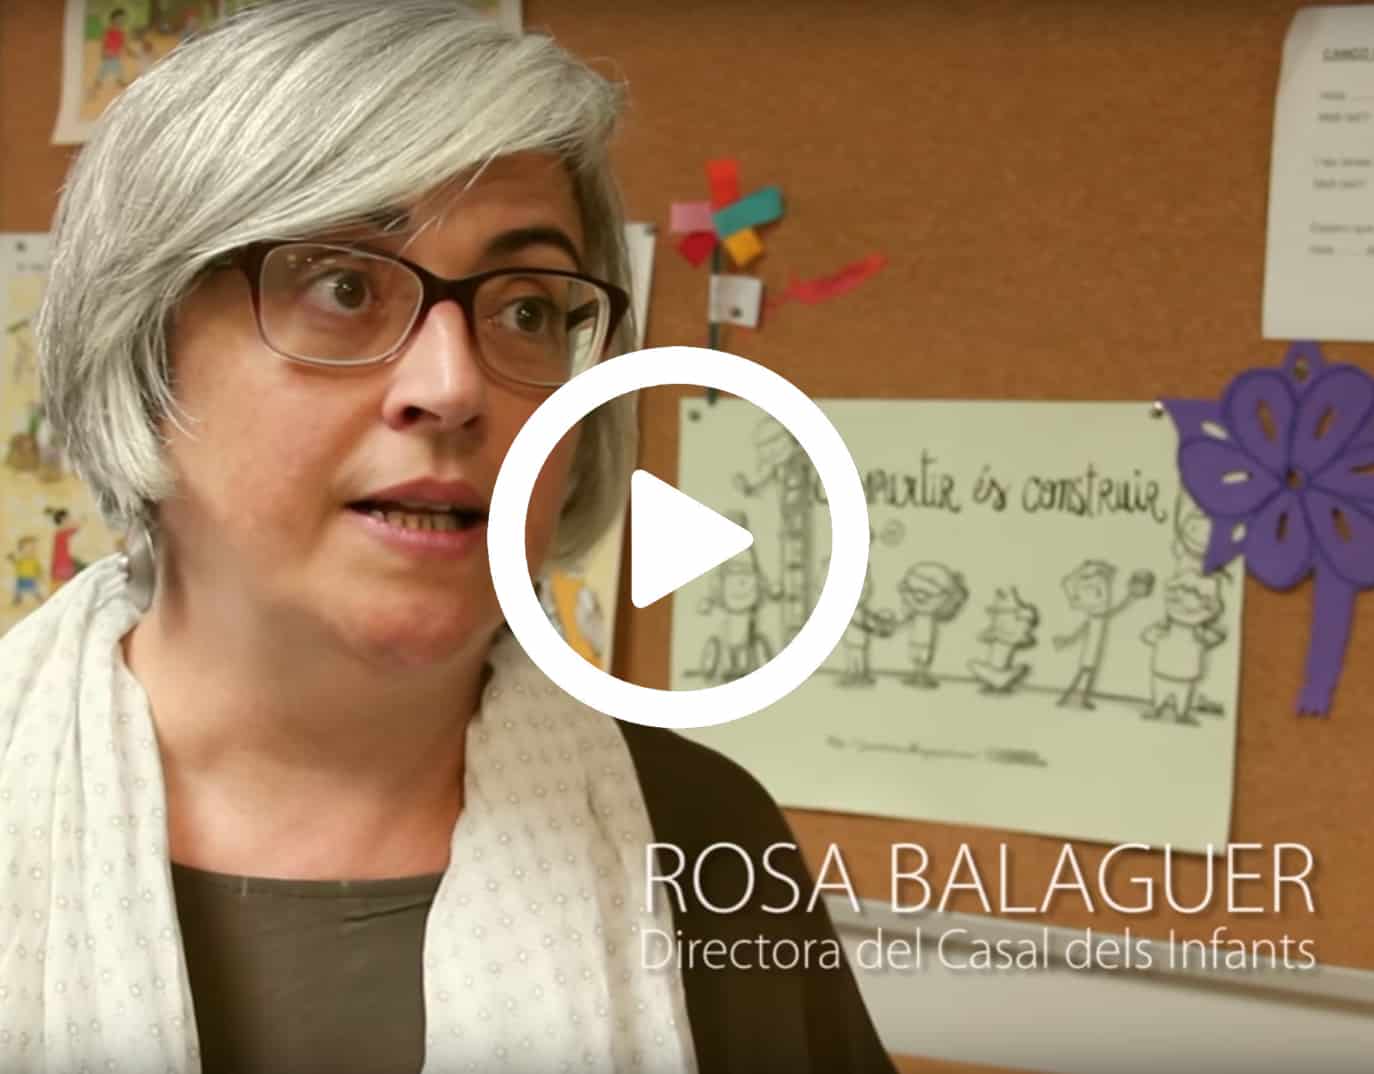 Rosa Balaguer Directora del Casal dels Infants